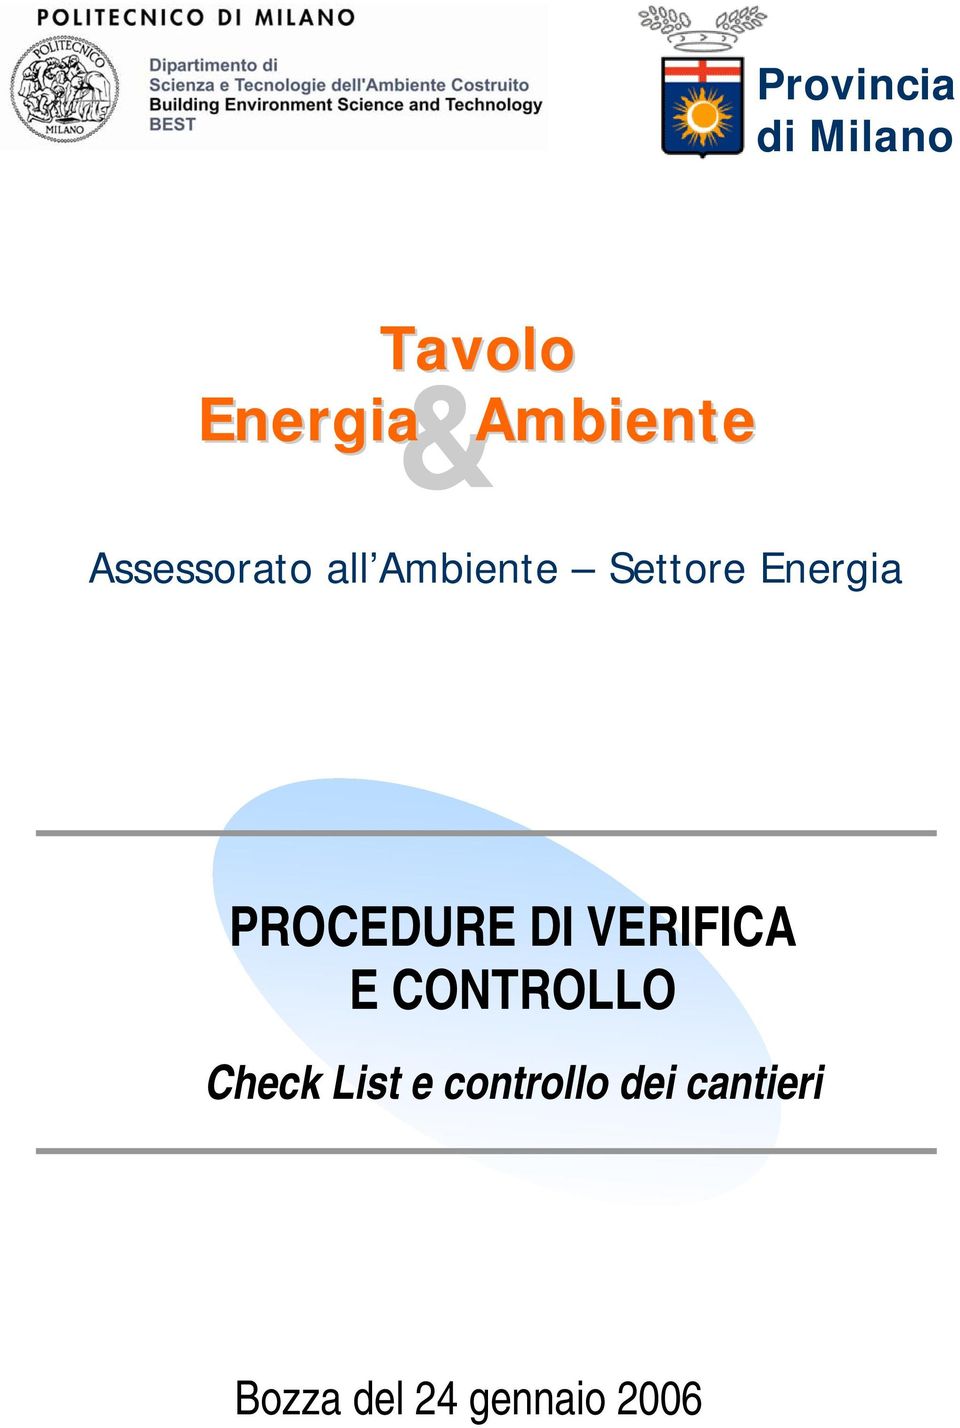 PROCEDURE DI VERIFICA E CONTROLLO Check List